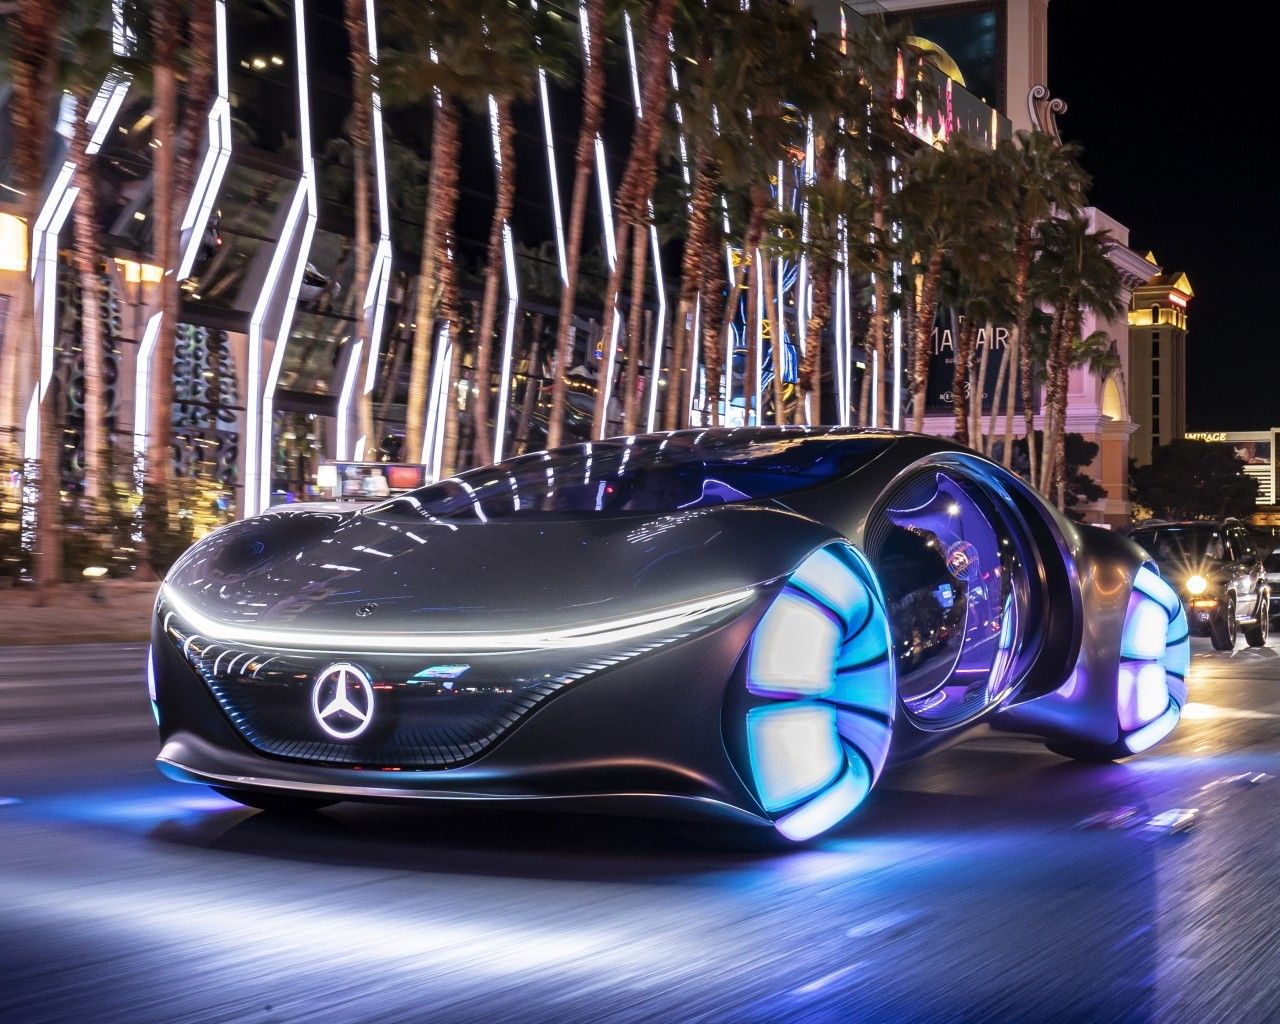 Download 1280x1024 Mercedes Benz Vision Avtr, Road, Futuristic Cars Wallpaper